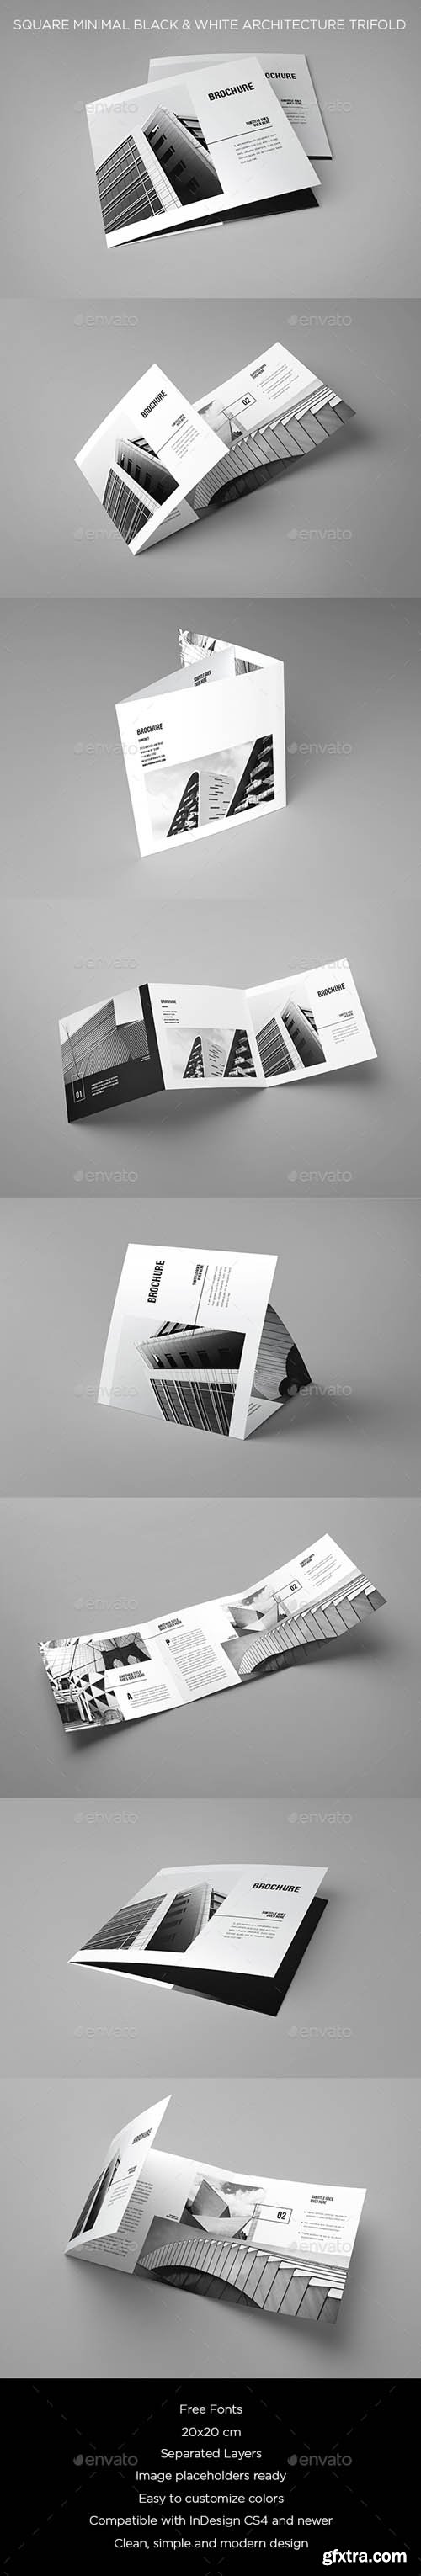 GR - Square Minimal Black & White Architecture Trifold 20512196